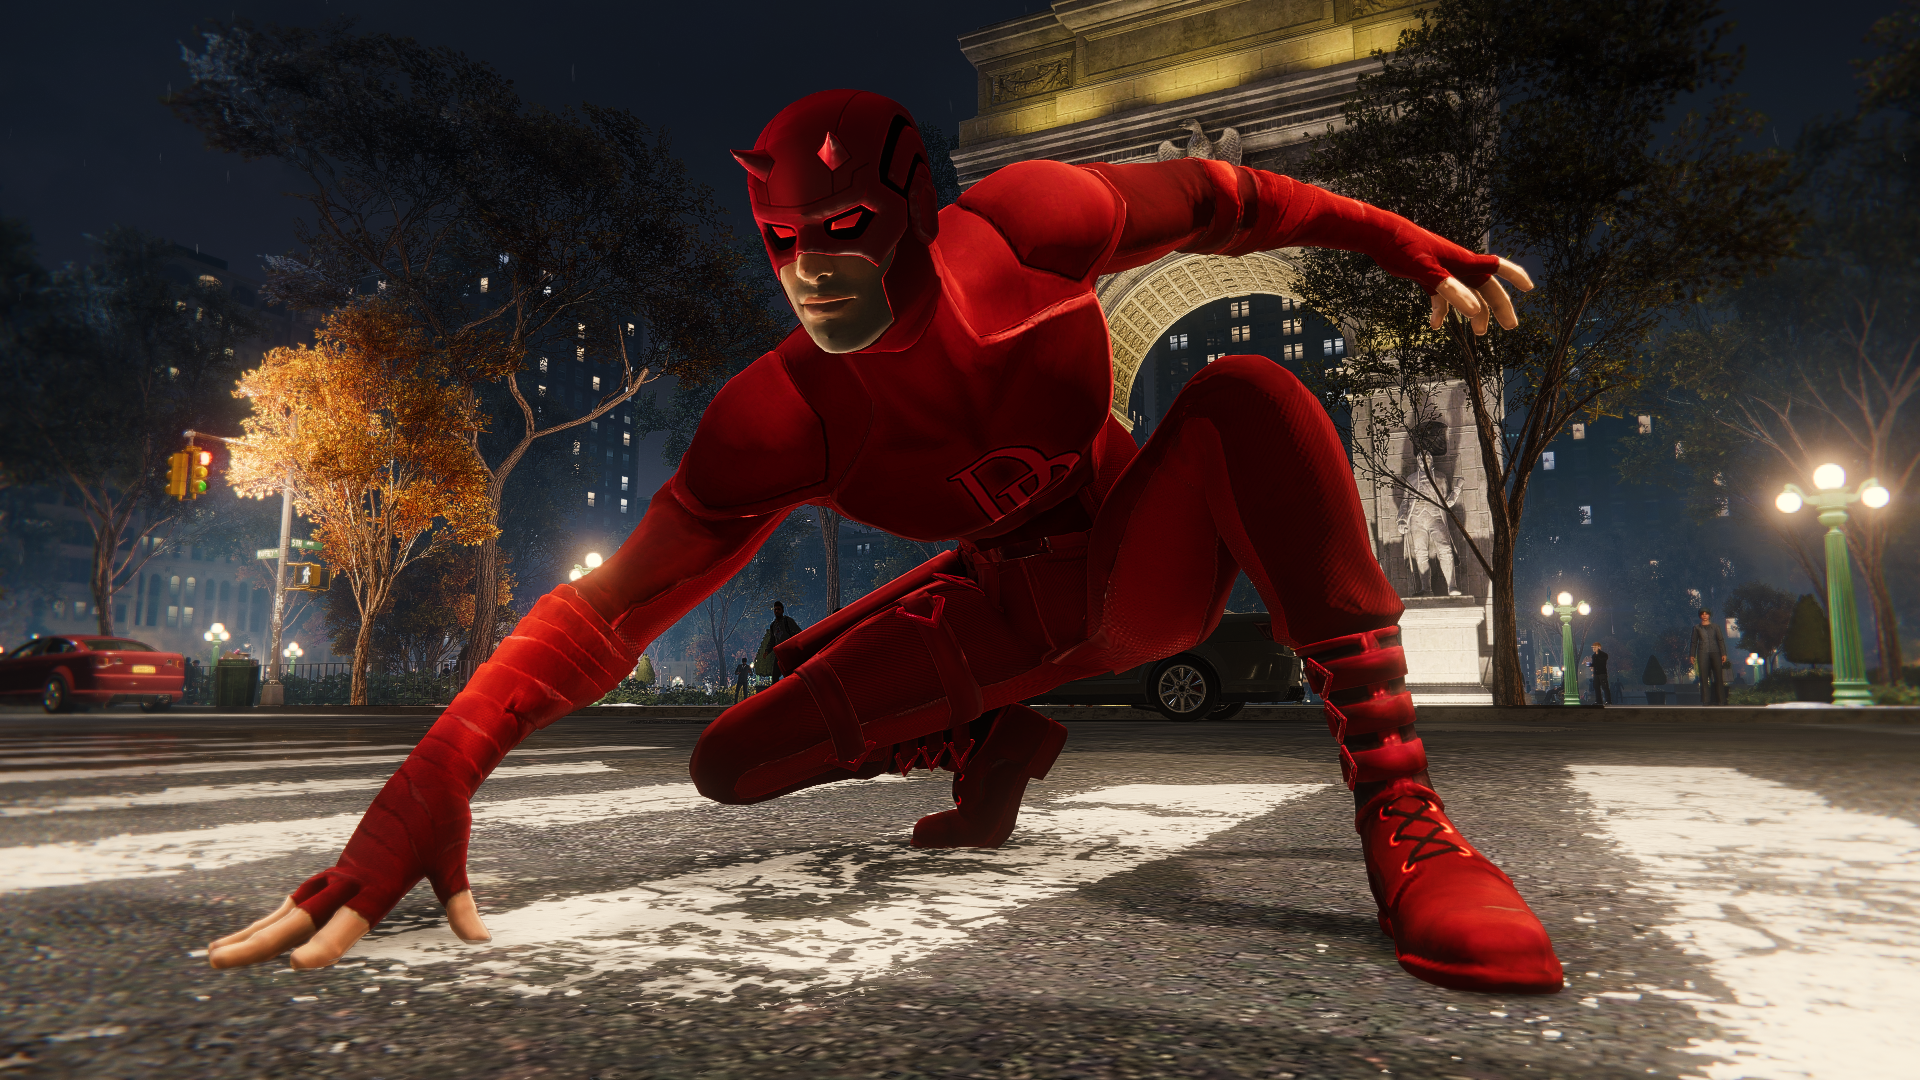 Daredevil spider-man